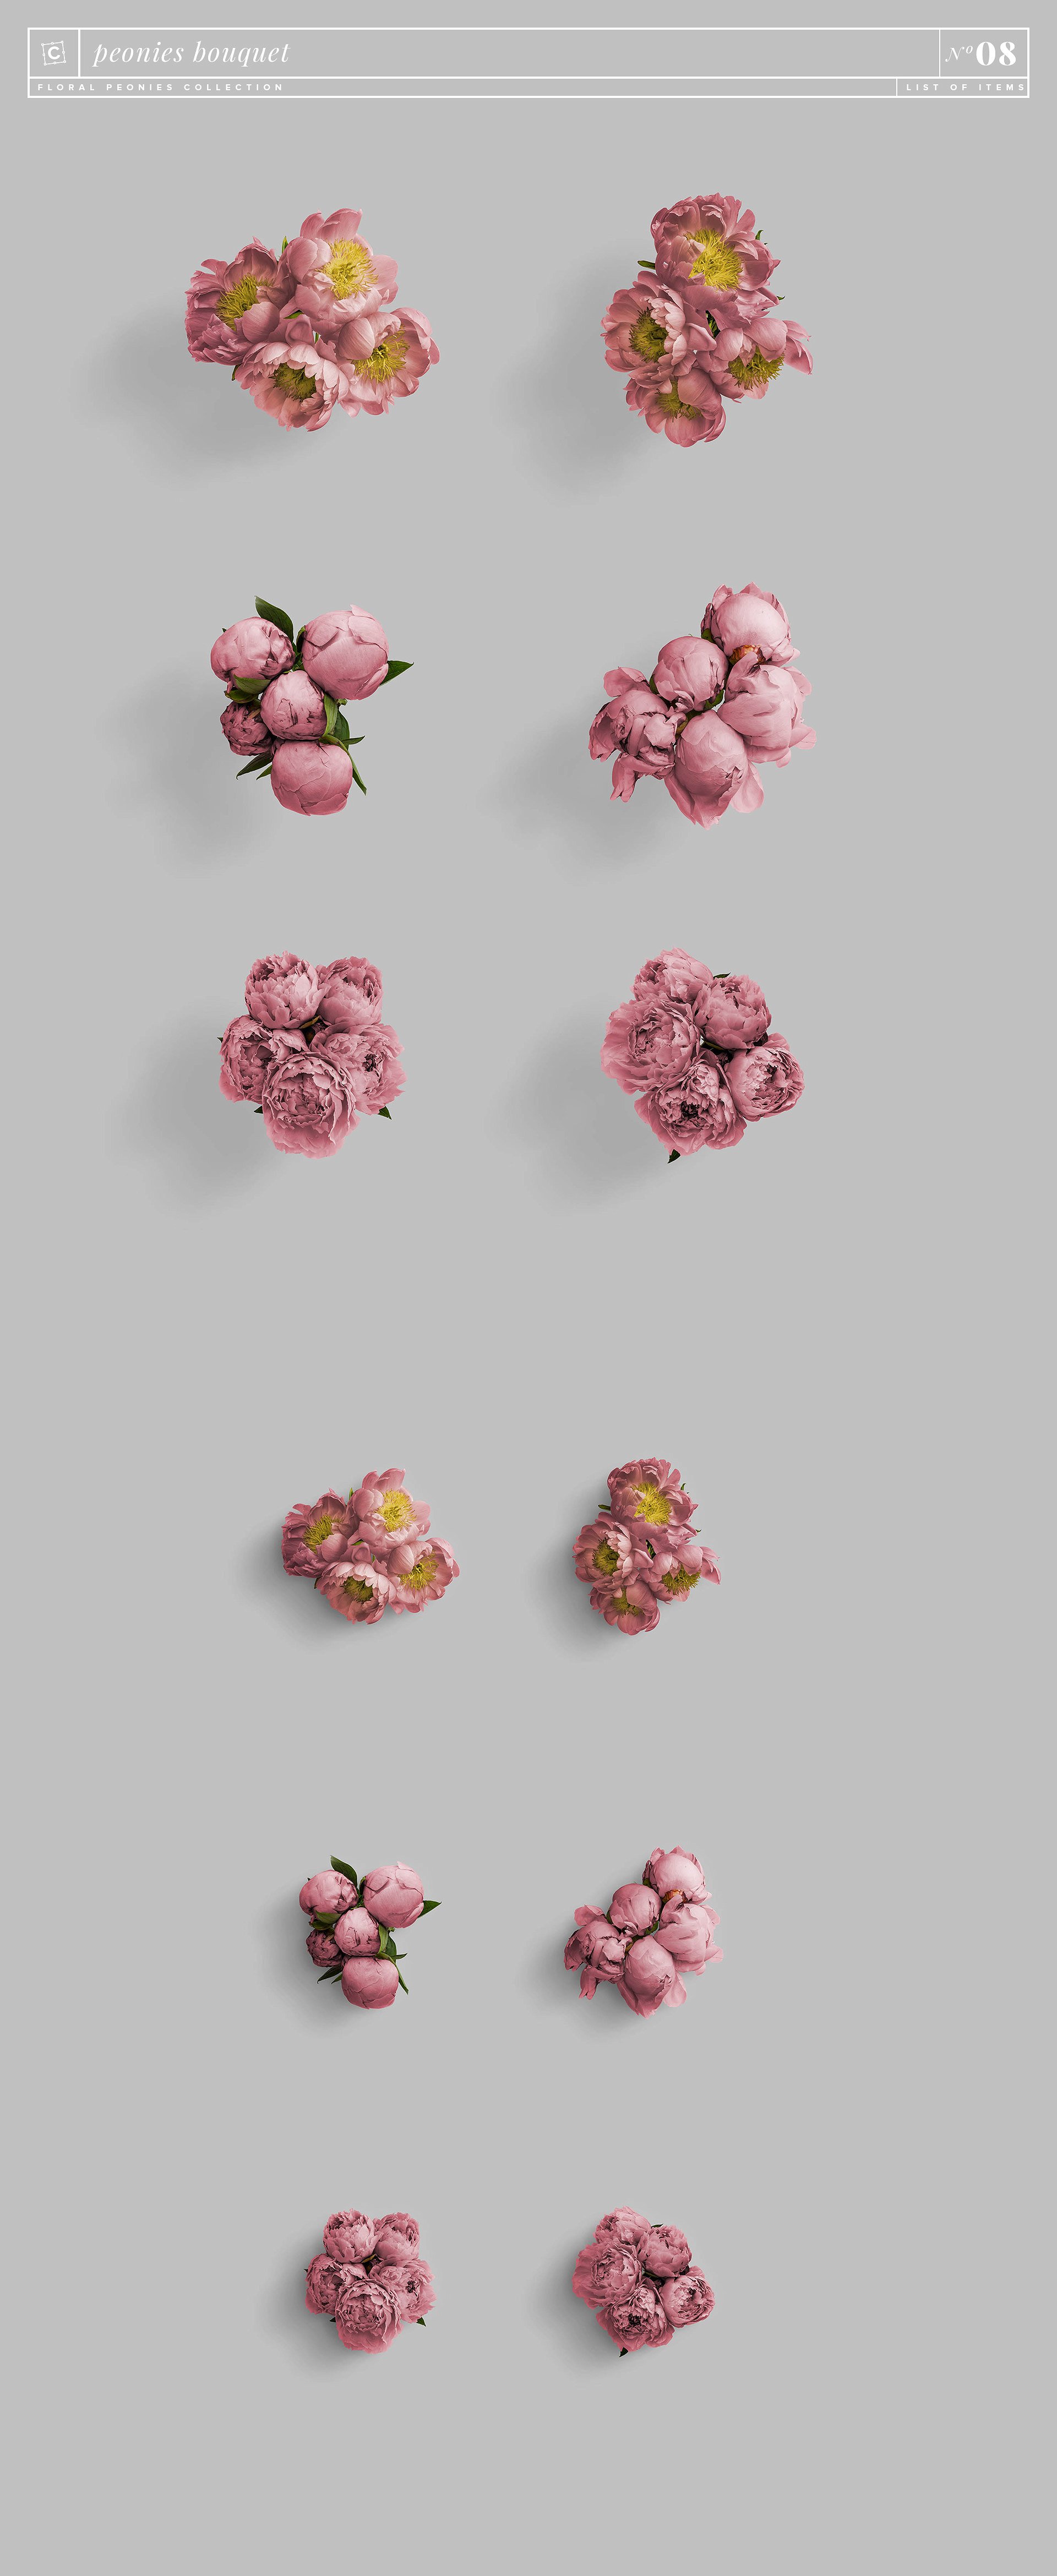 牡丹花卉系列高清图片集合 Floral Peonies Collection插图14